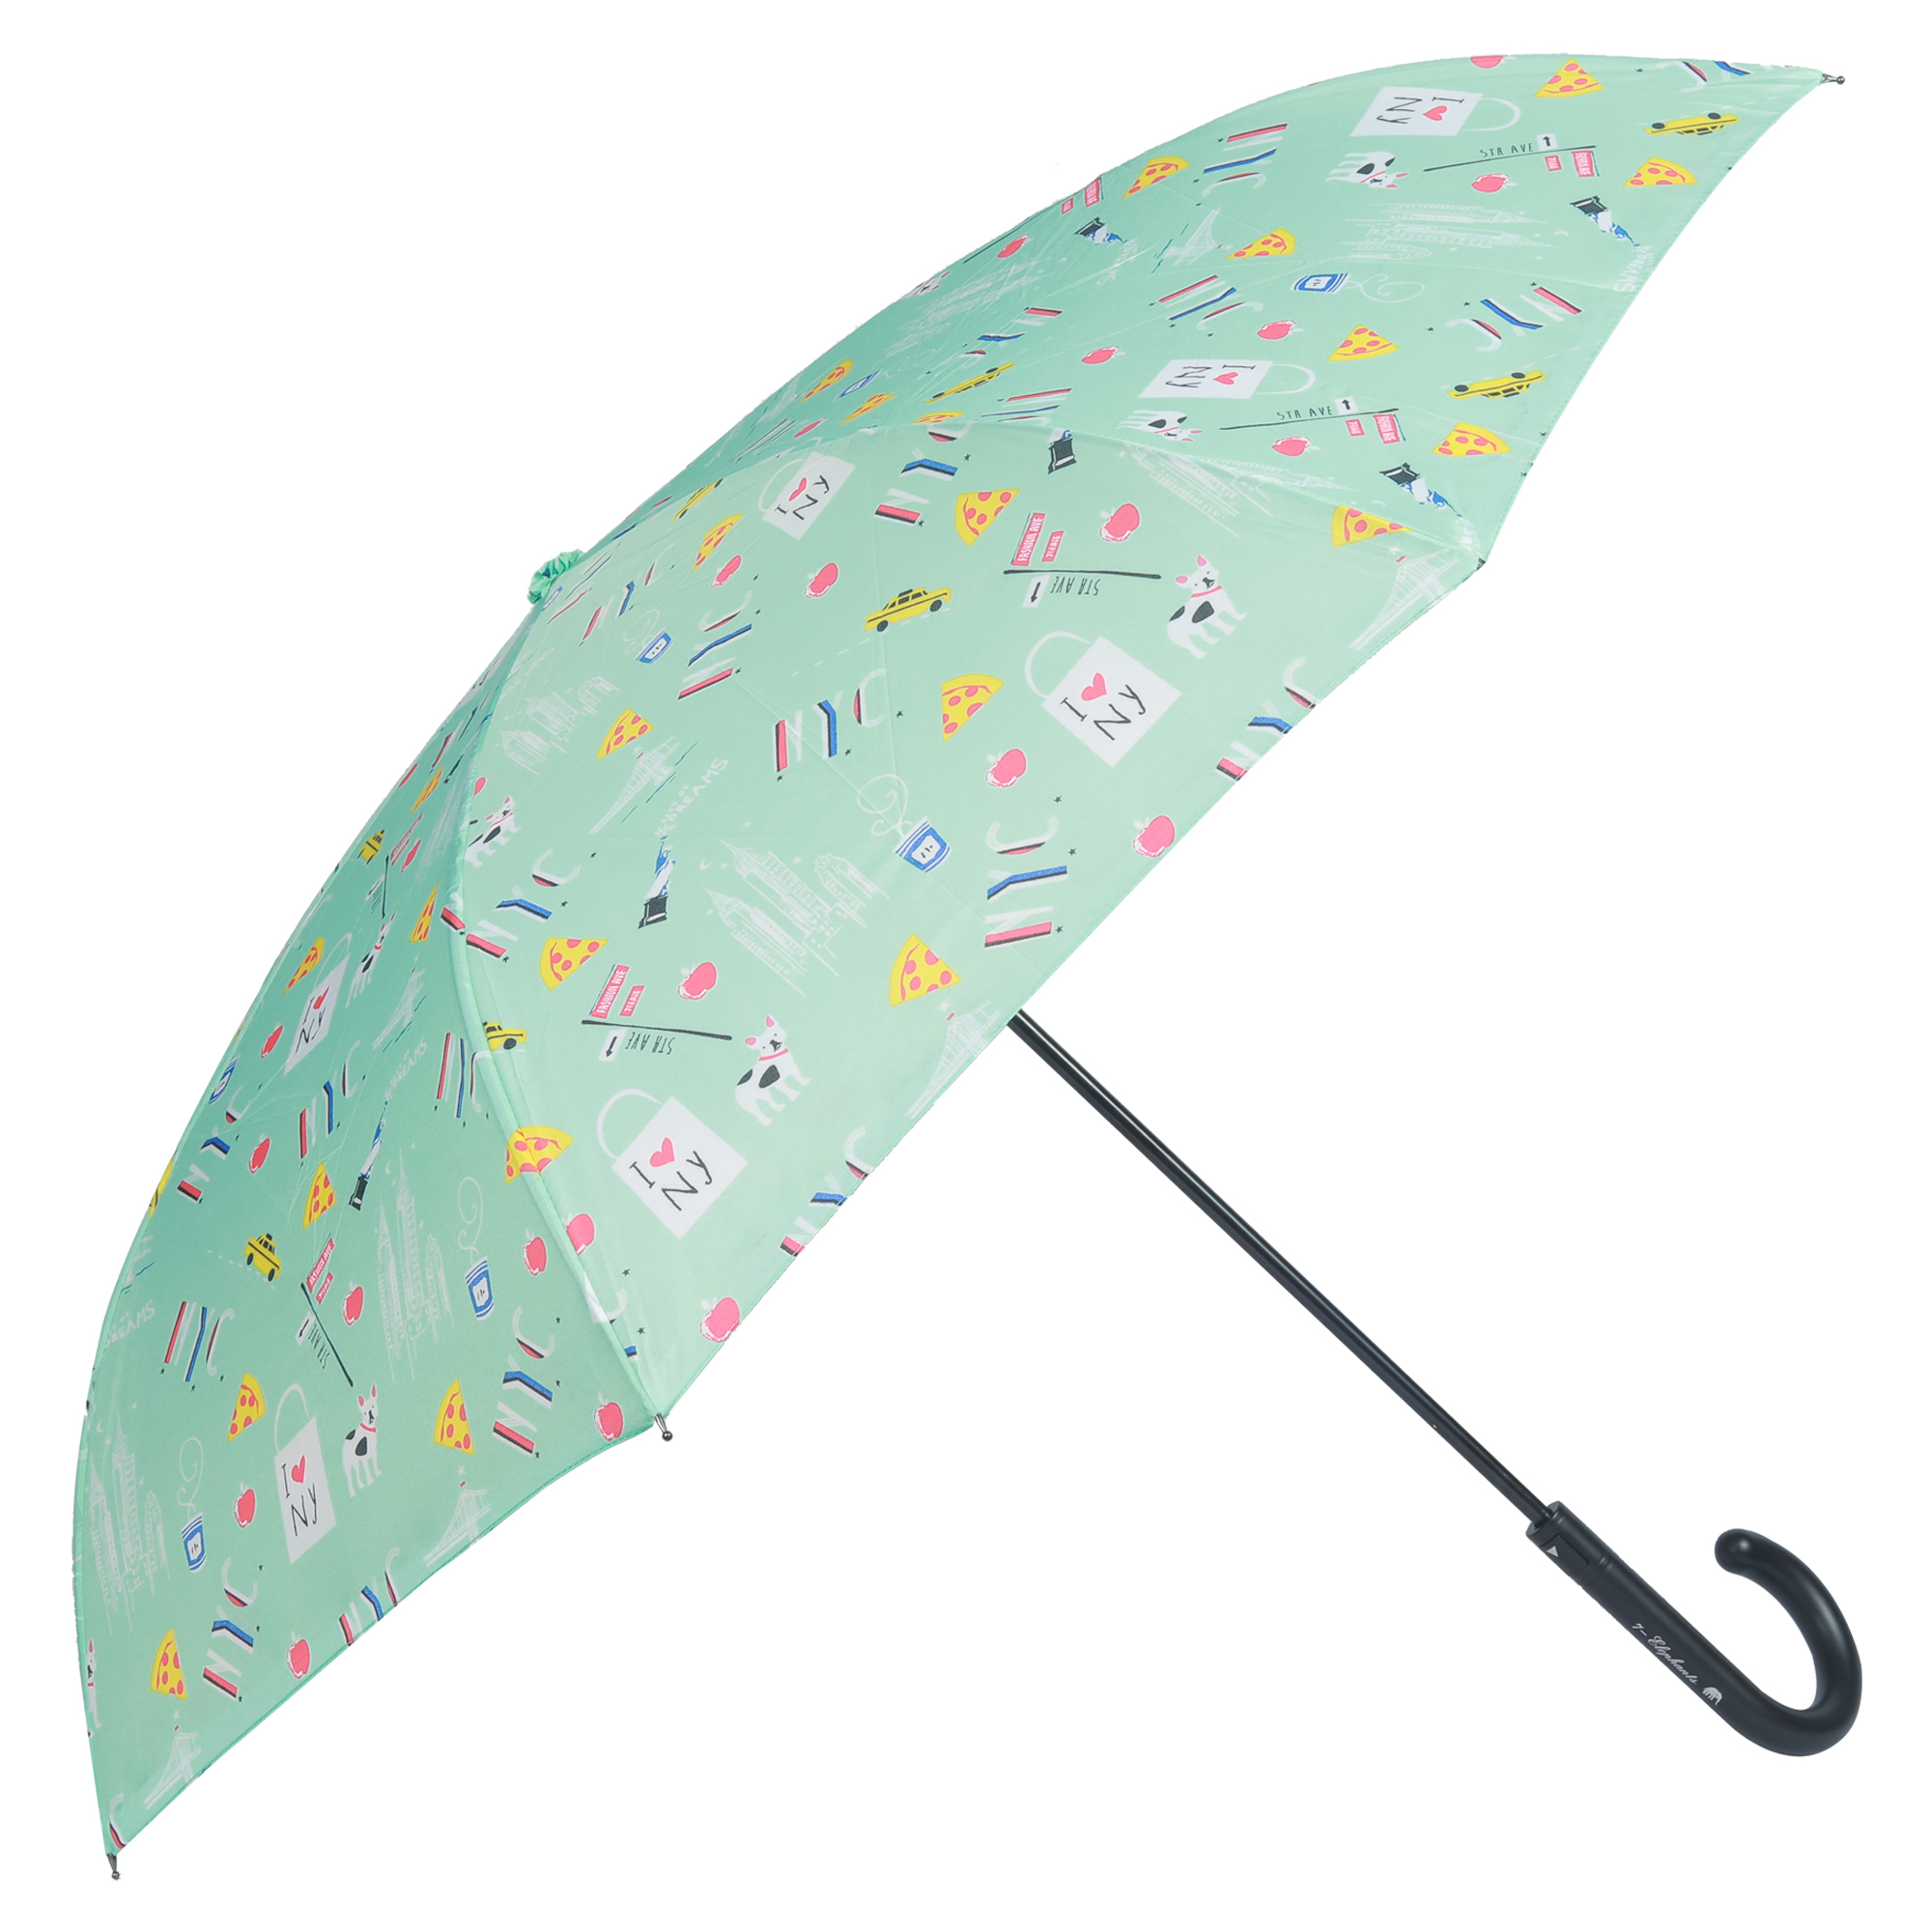 COLOMBO UMBRELLAS Inverted Umbrella, Reversible CUM_6D